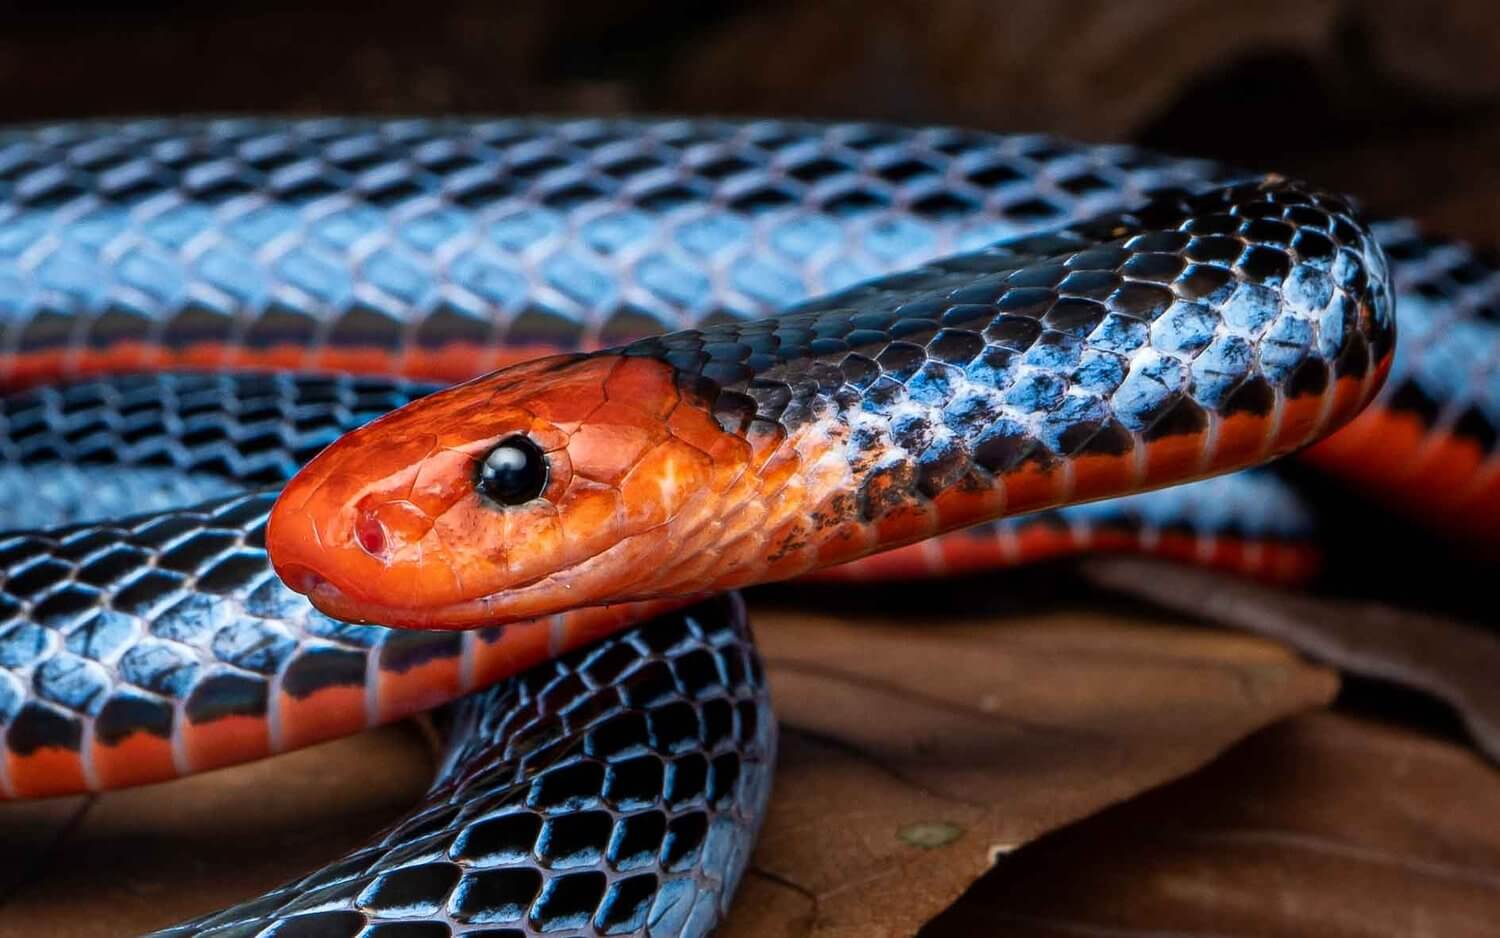 Testa del serpente corallo blu e parte del suo corpo sullo sfondo.